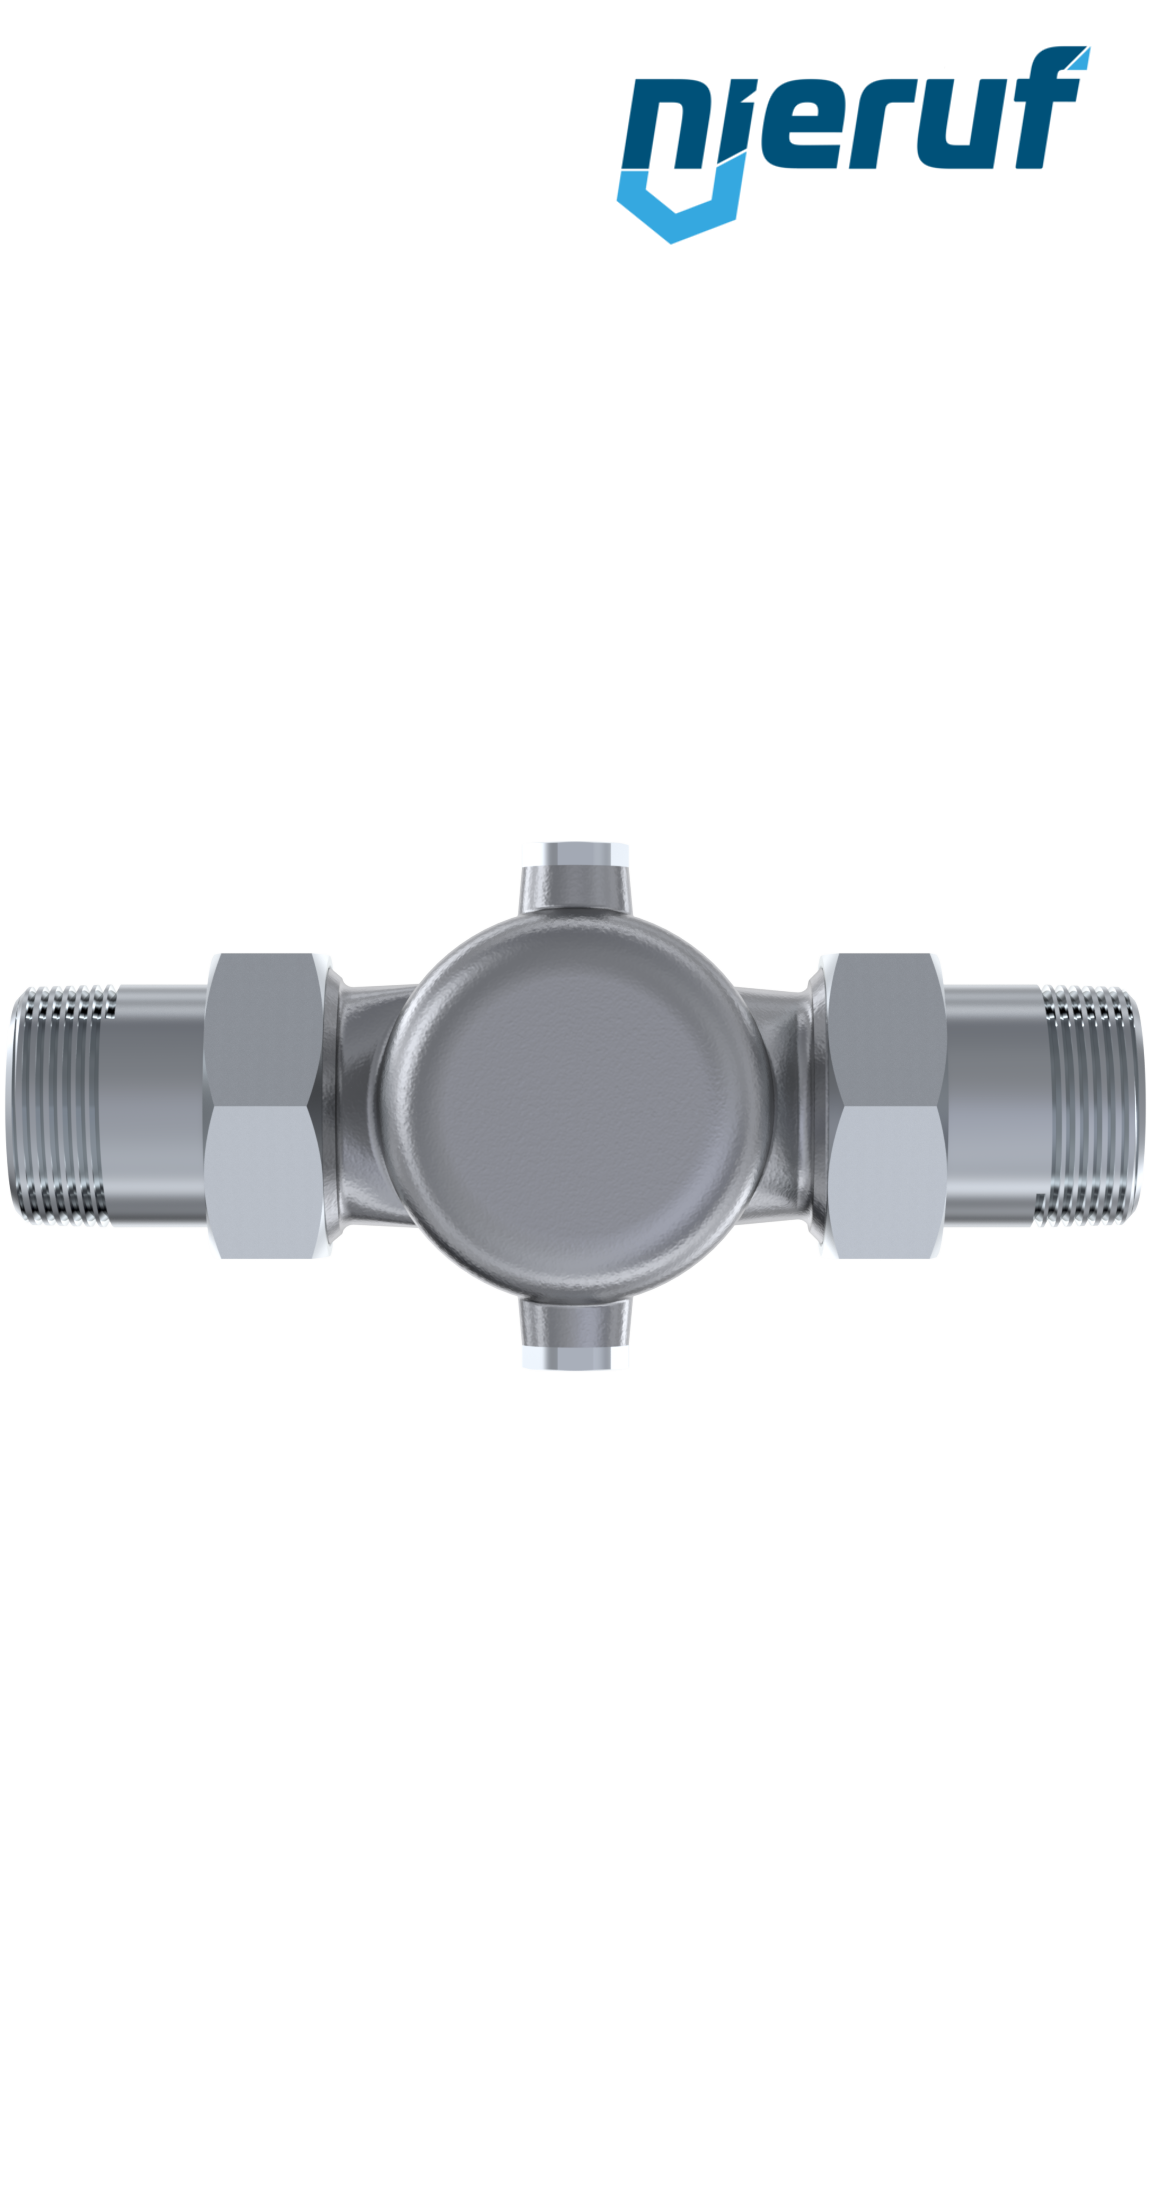 pressure reducing valve 2" inch male thread DM04 stainless steel FKM 5.0 - 15.0 bar